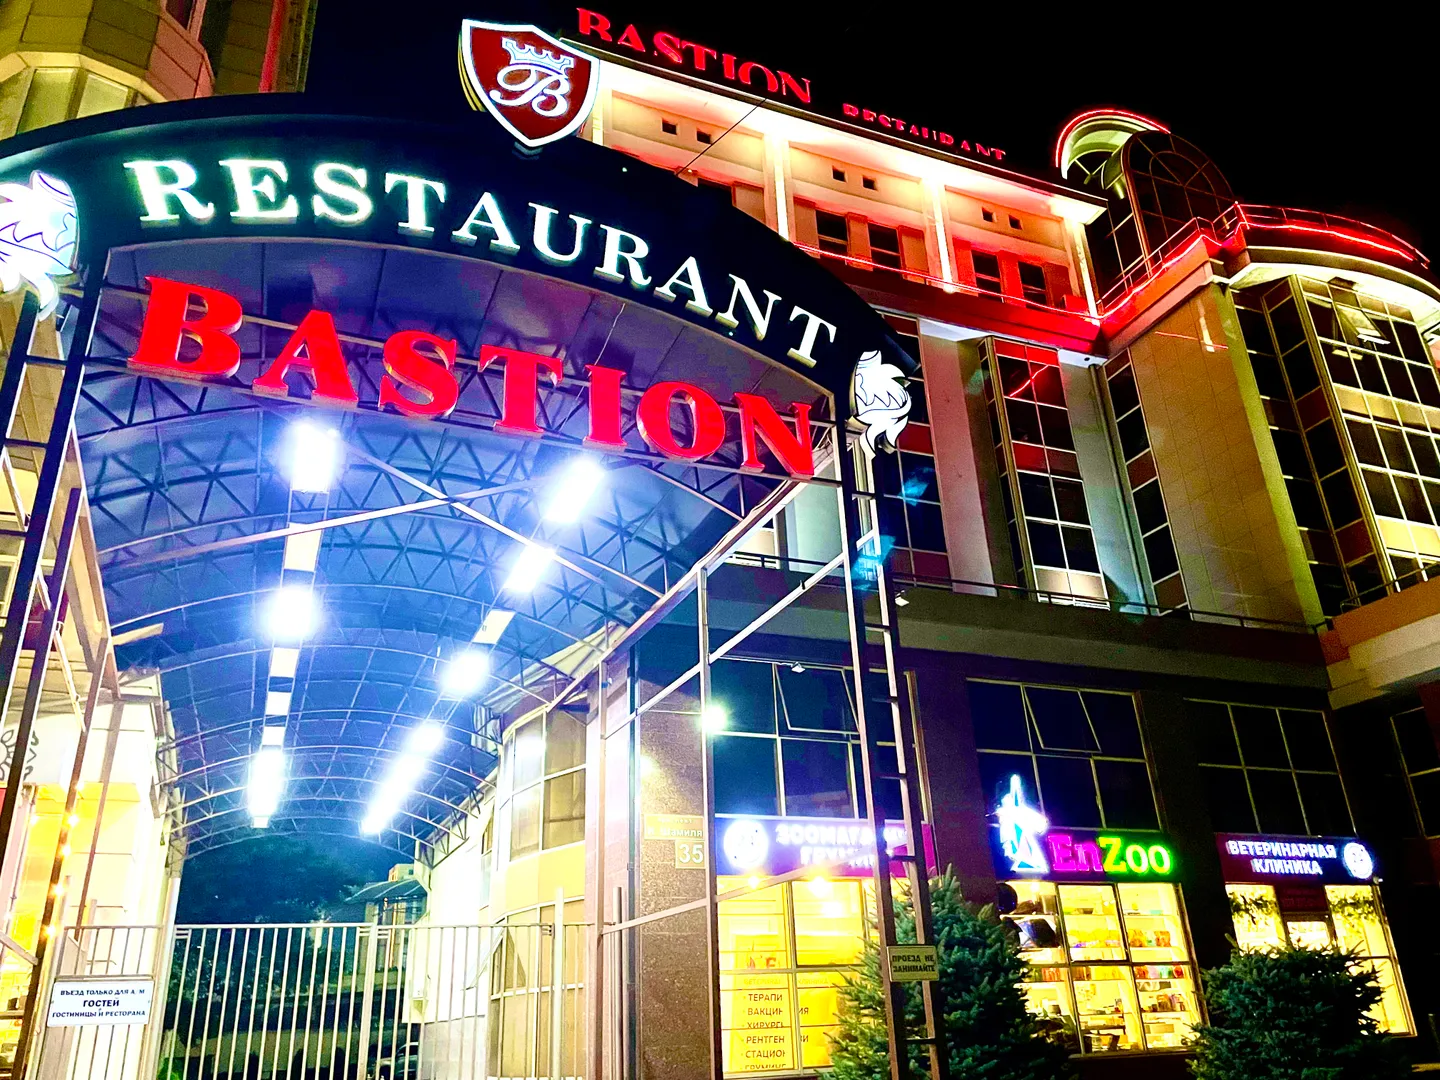 Ресторан "Бастион" расположен в 50 метрах от объекта